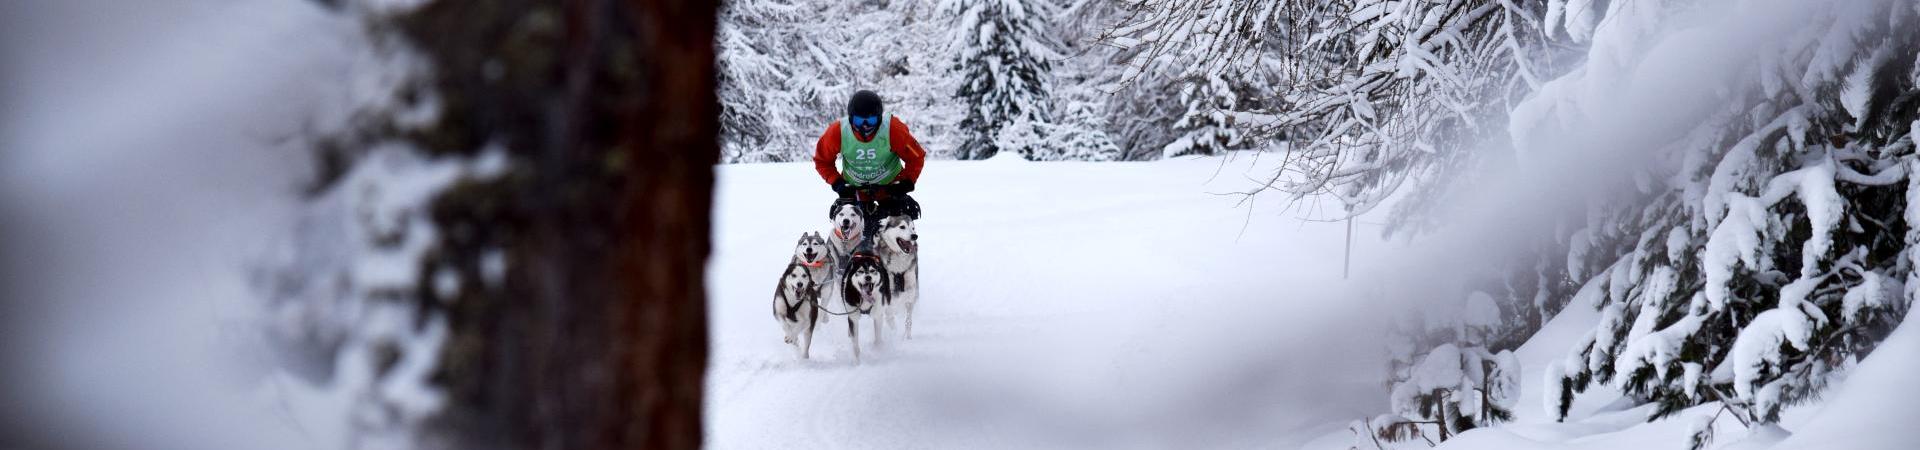 winter-hundeschlittenrennen-langtaufers-reschenpass-tvrp